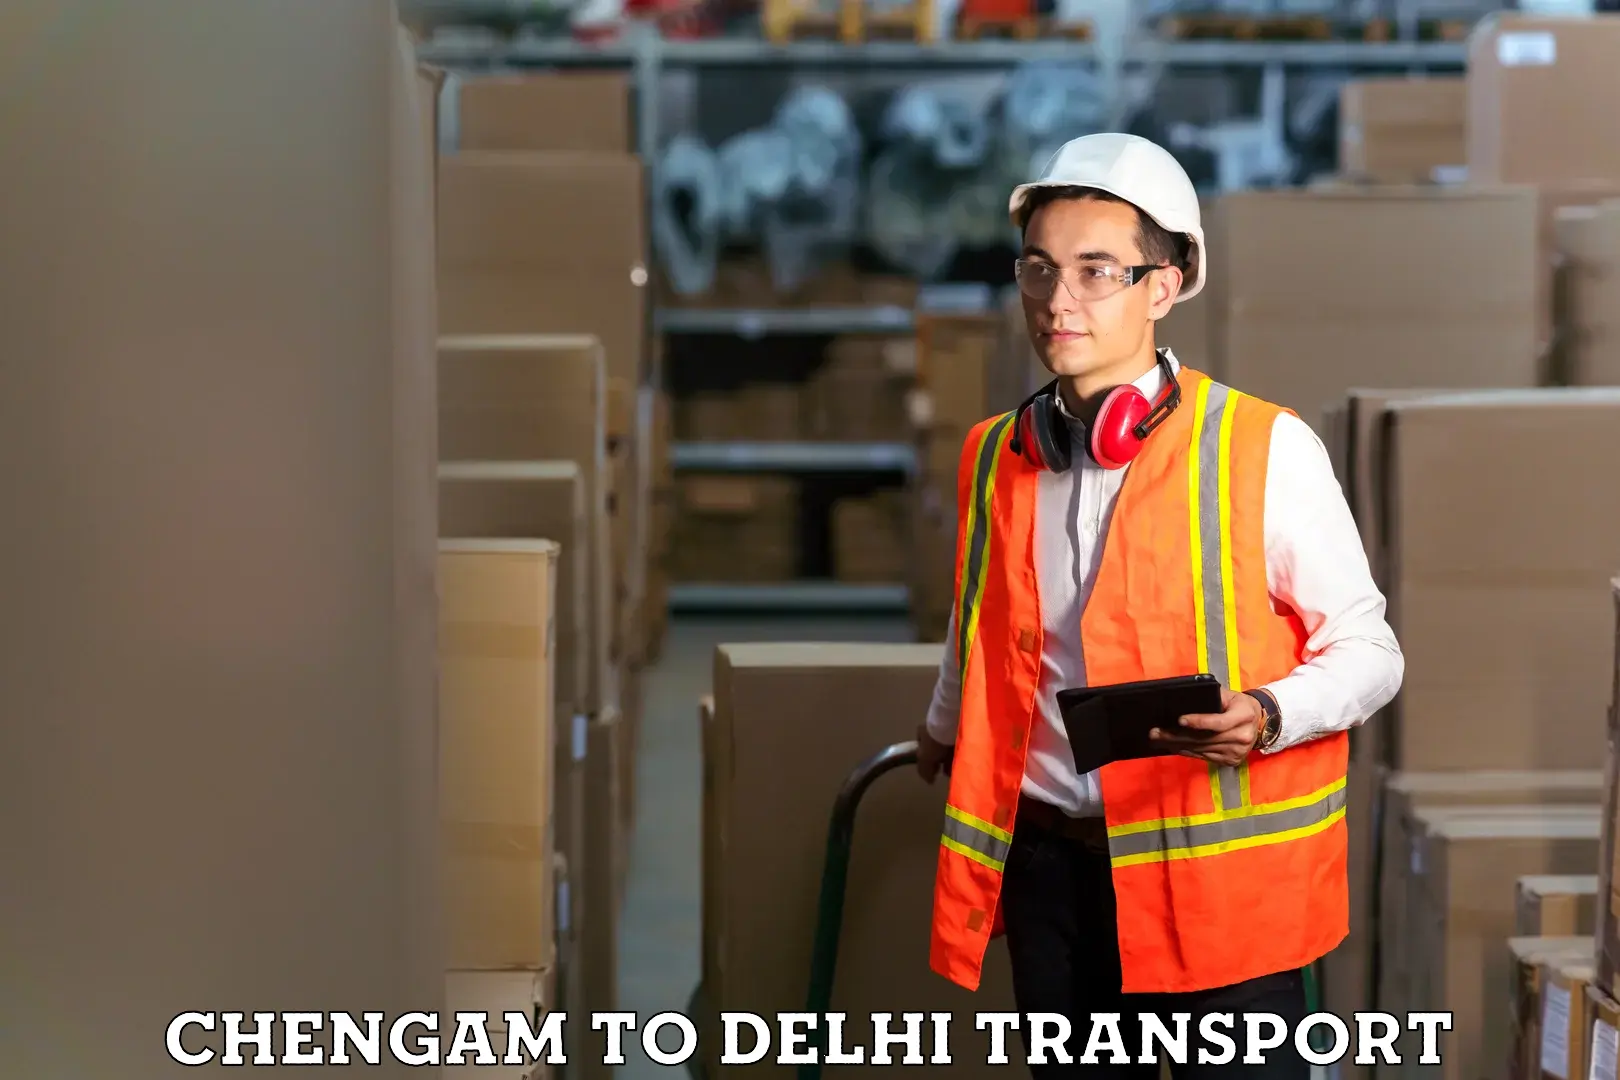 Bike shipping service Chengam to Delhi